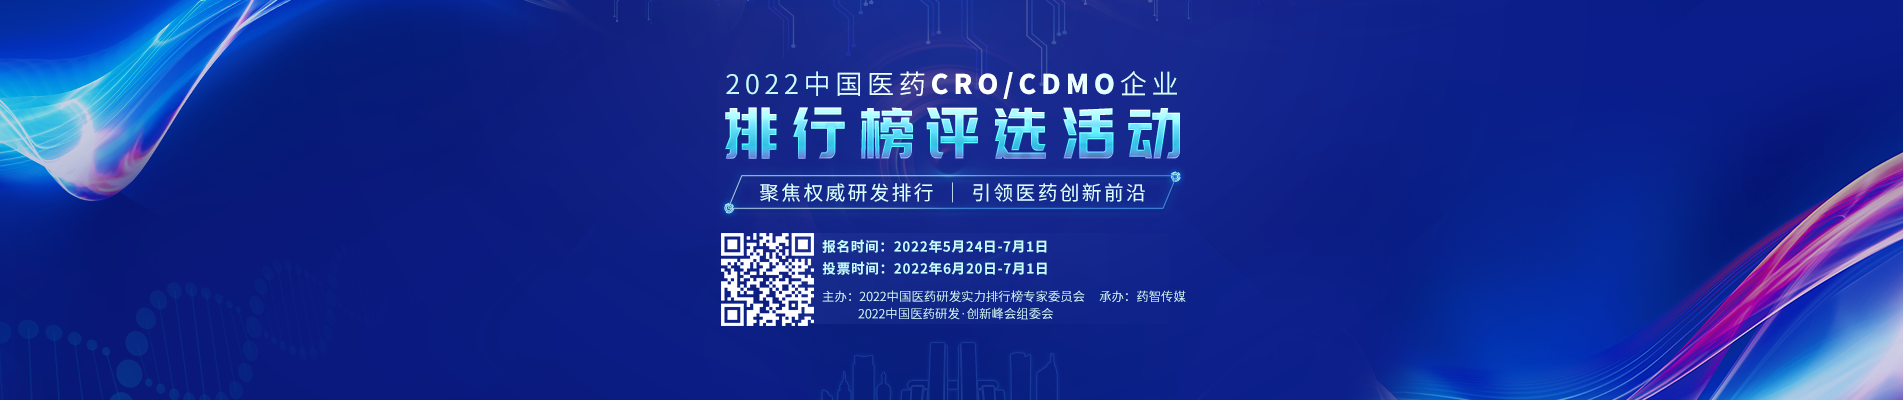 中国医药CRO/CDMO黄金时代，谁是王者？